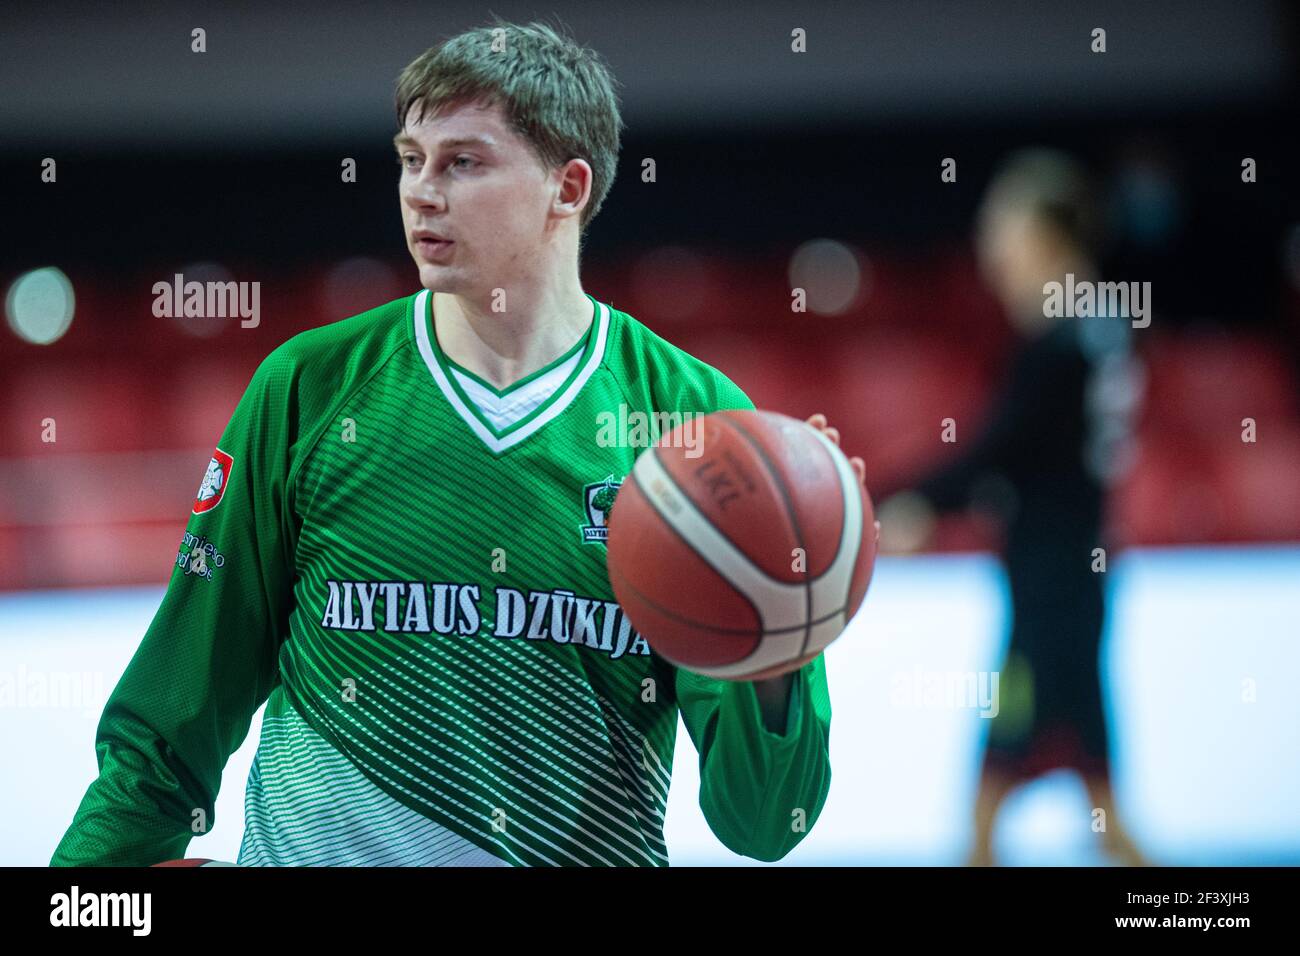 2021-03-17. Matas Jucikas - Lithuanian basketball player, BC Dzukija,  Alytus , Dzukija Stock Photo - Alamy